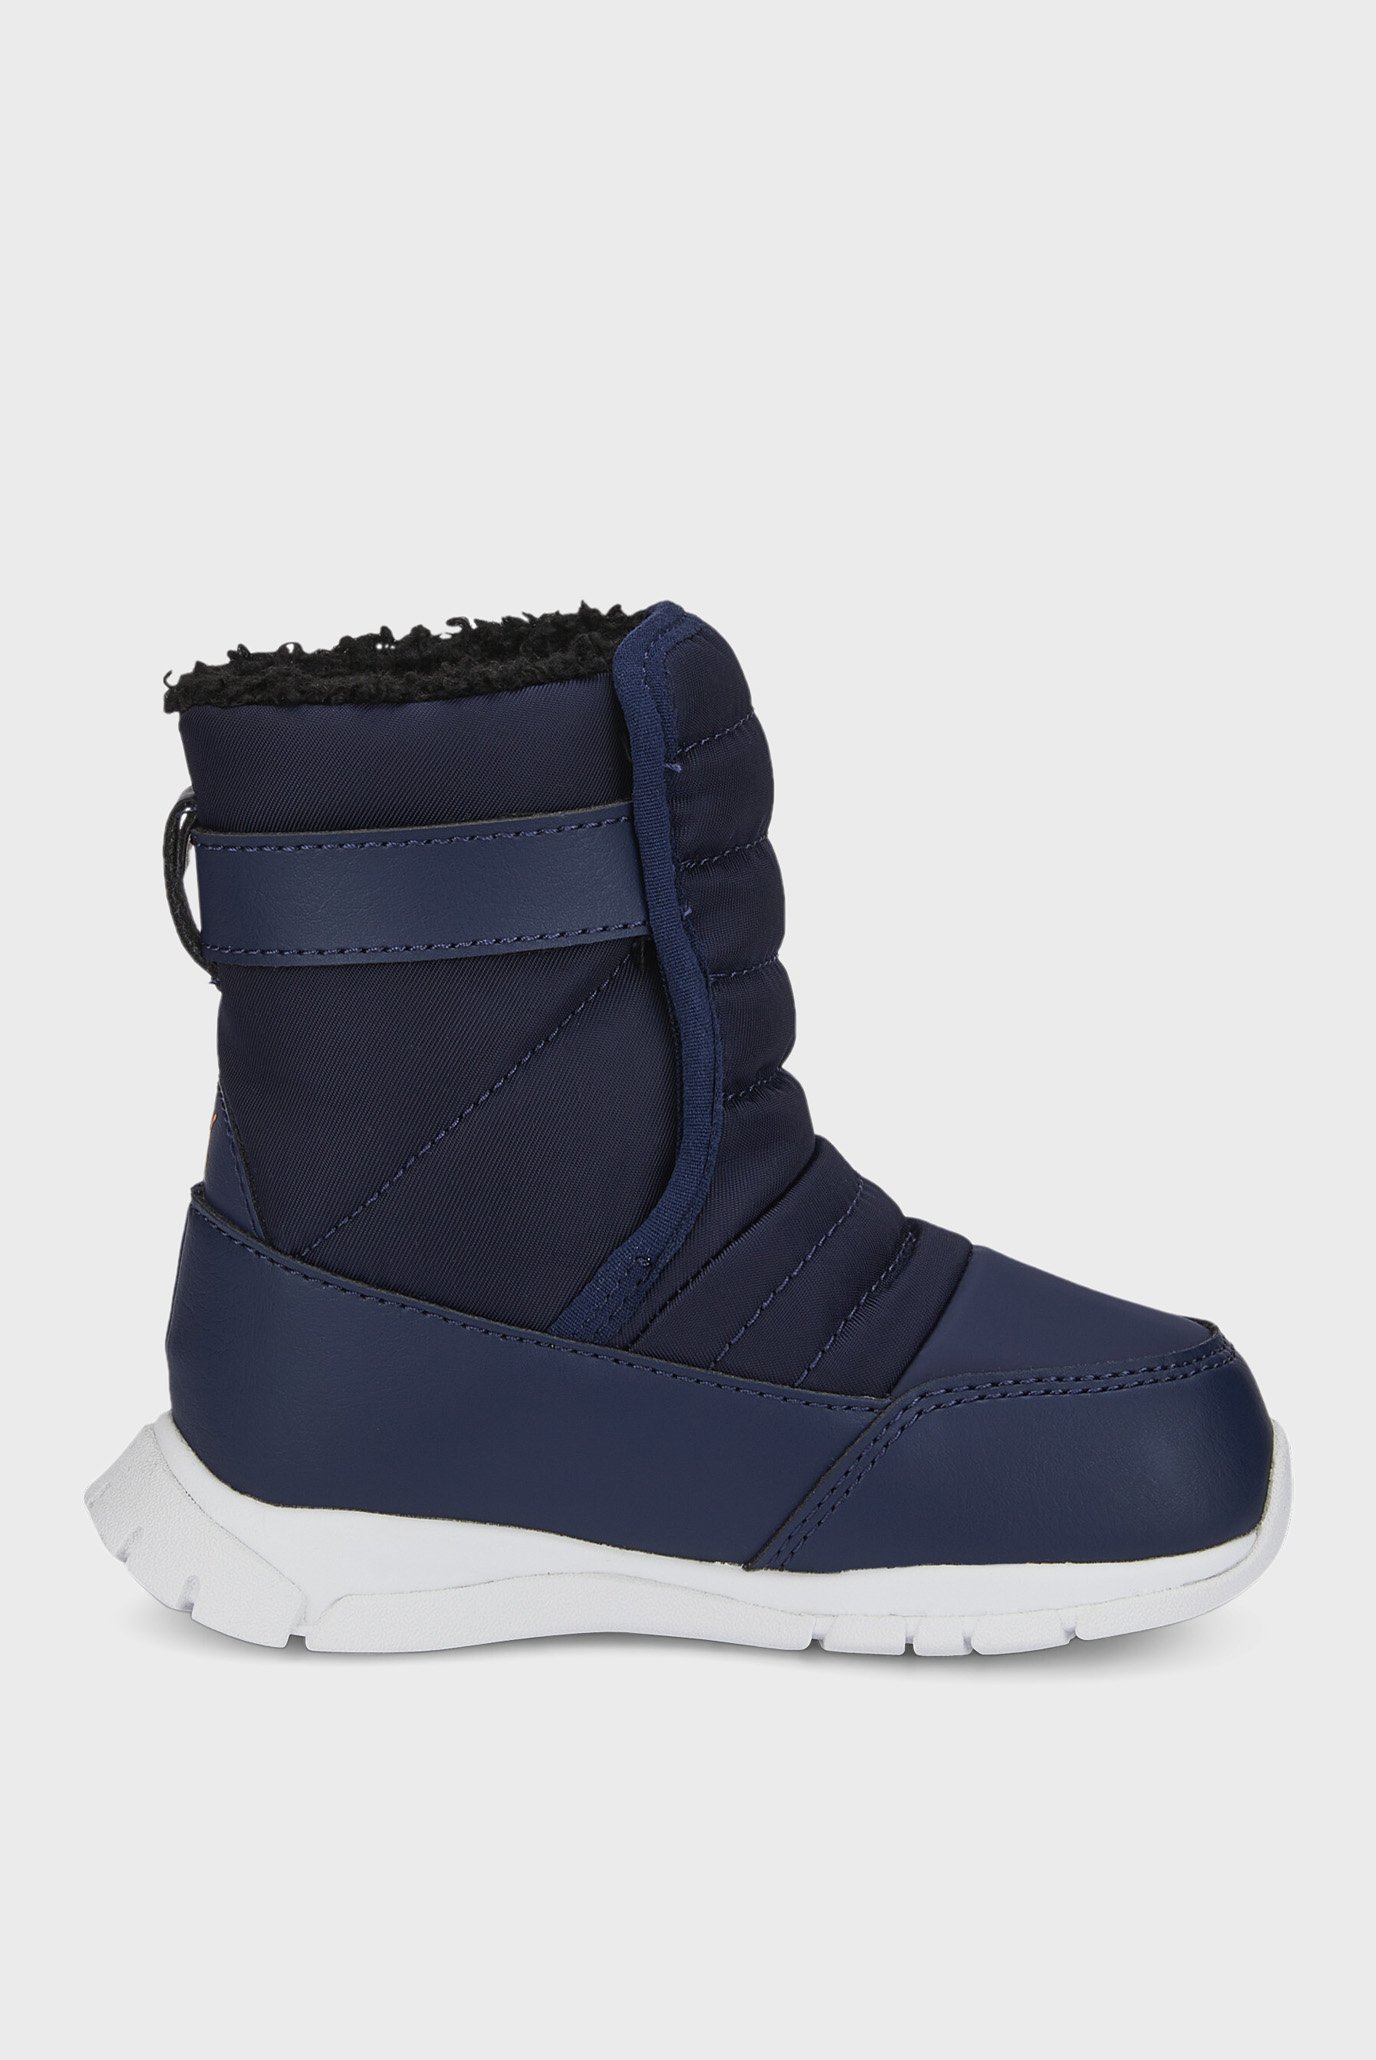 Дитячі темно-сині чобітки Nieve Winter Babies' Boots 1